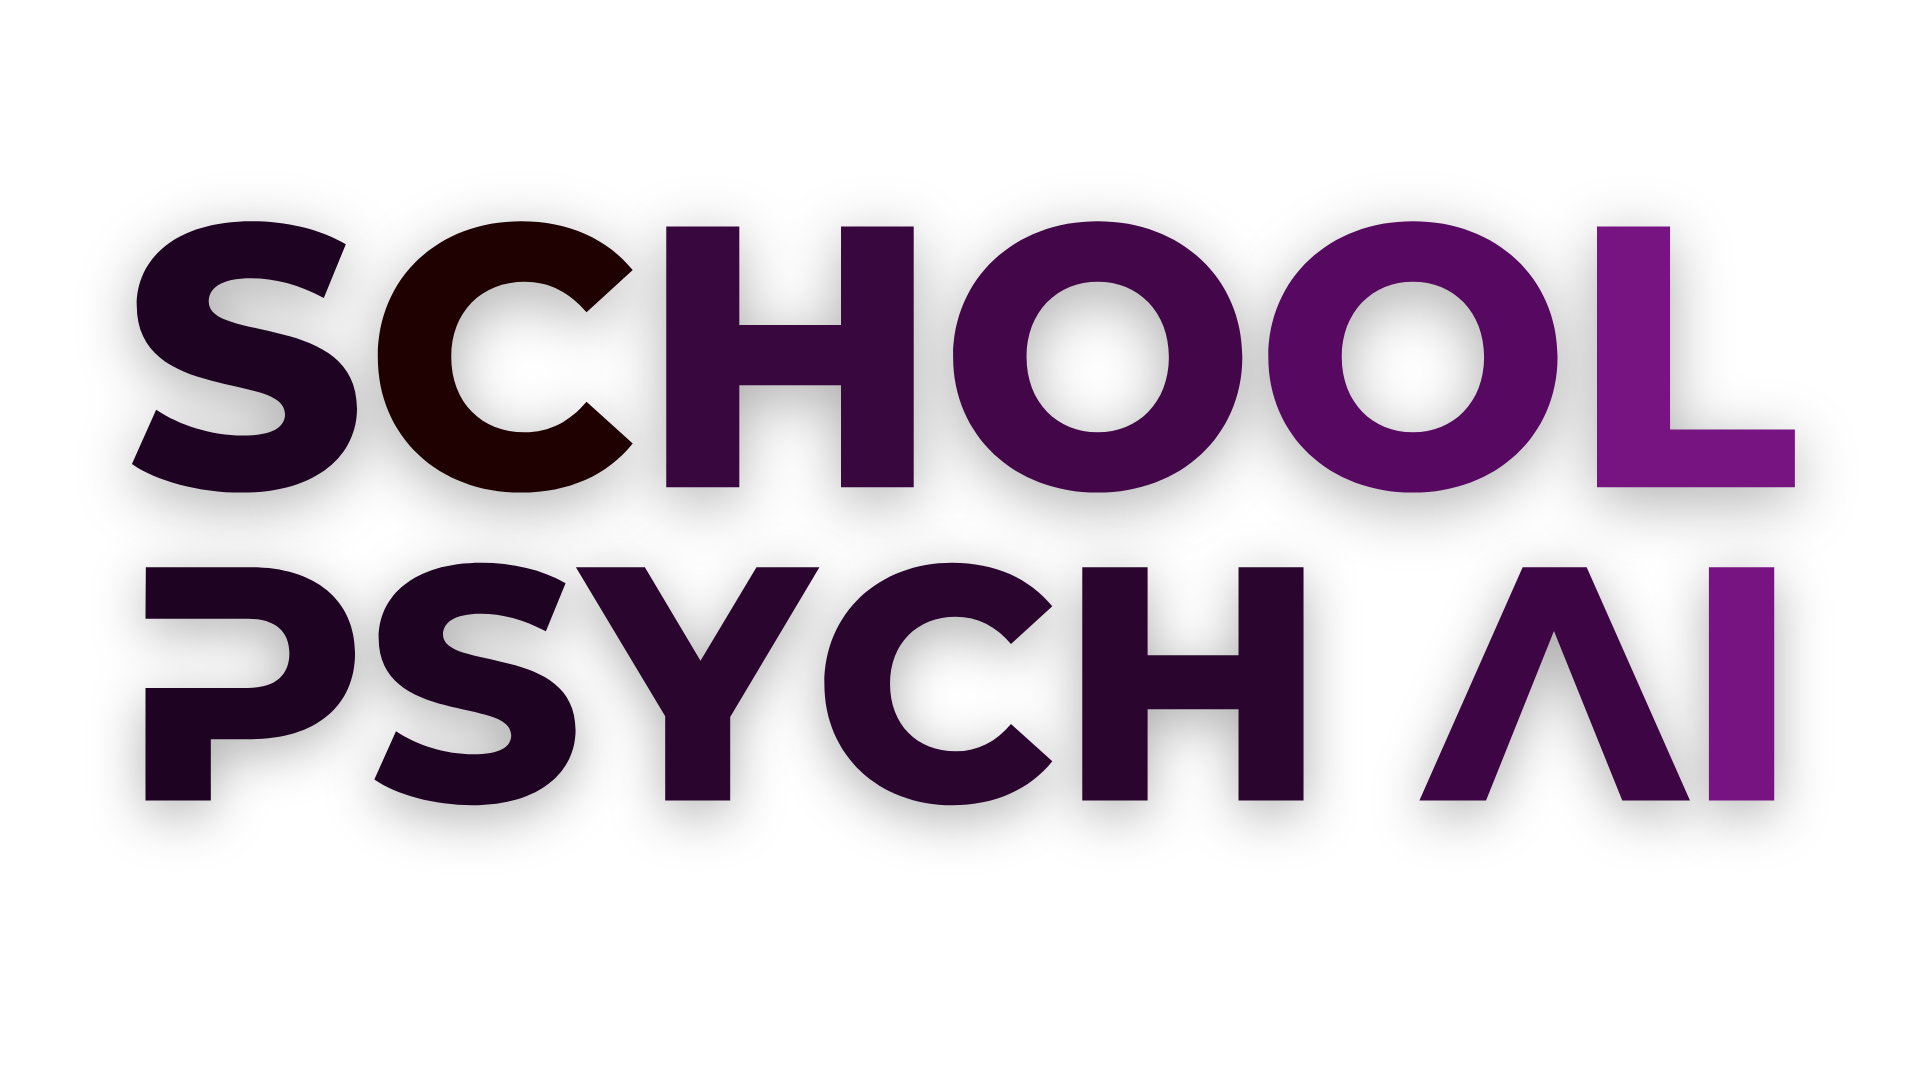 School Psych AI Logo